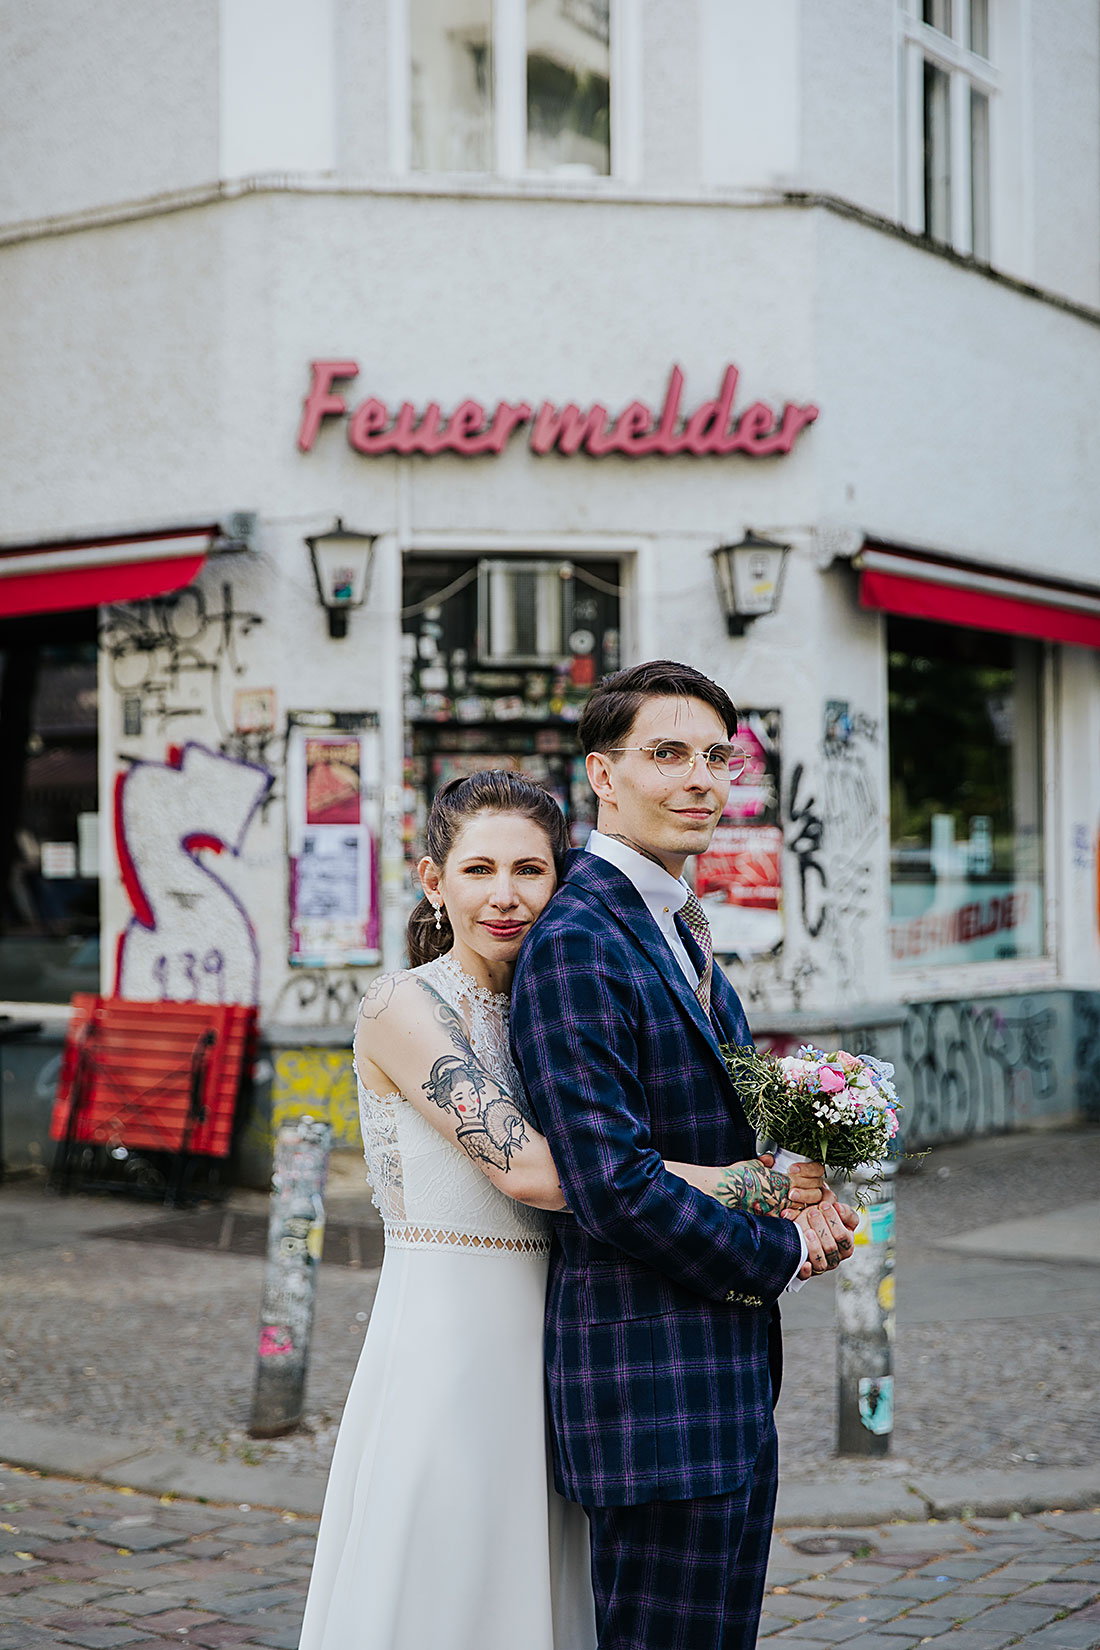 Urban Wedding Hochzeitsreportage © Miriam Ellerbrake, Berlin